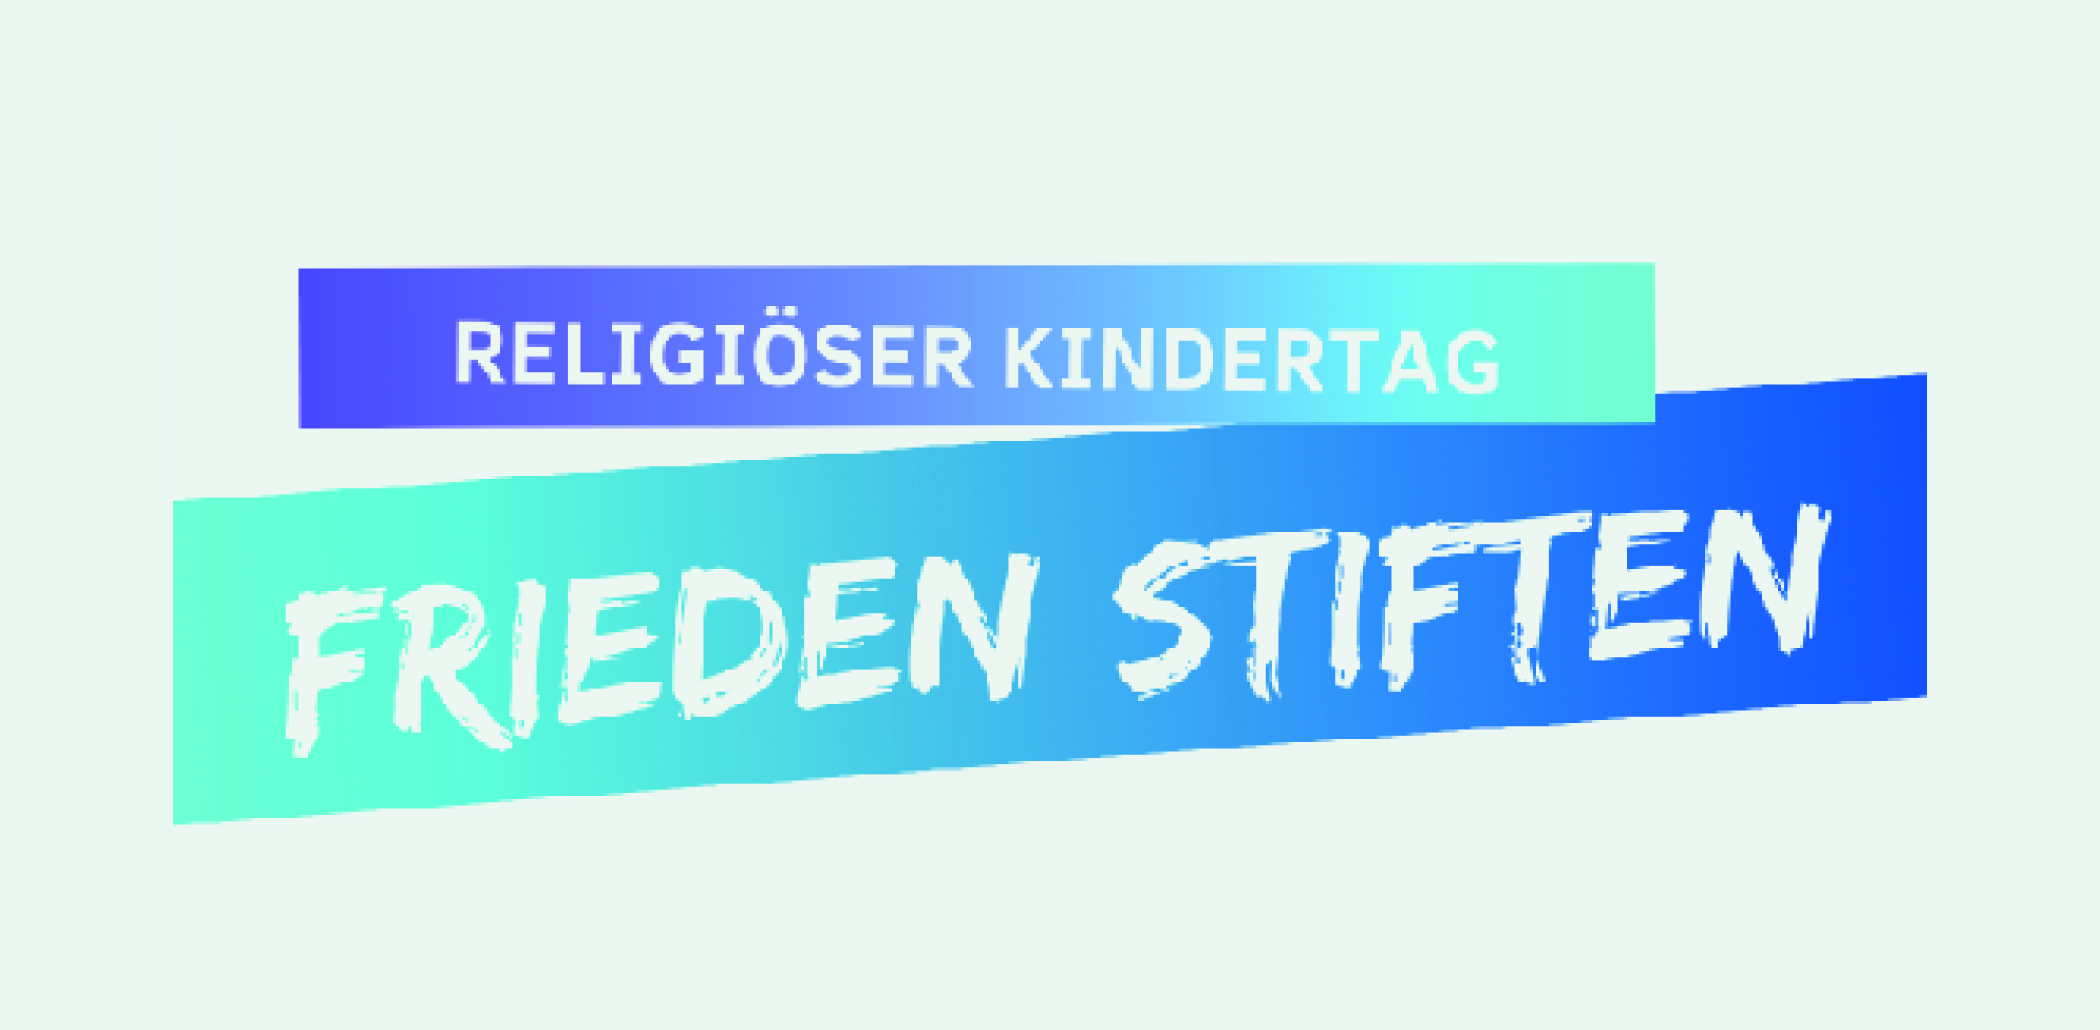 Wort-Bild-Marke mit den Worten Religiöse Kindertage - Frieden Stiften